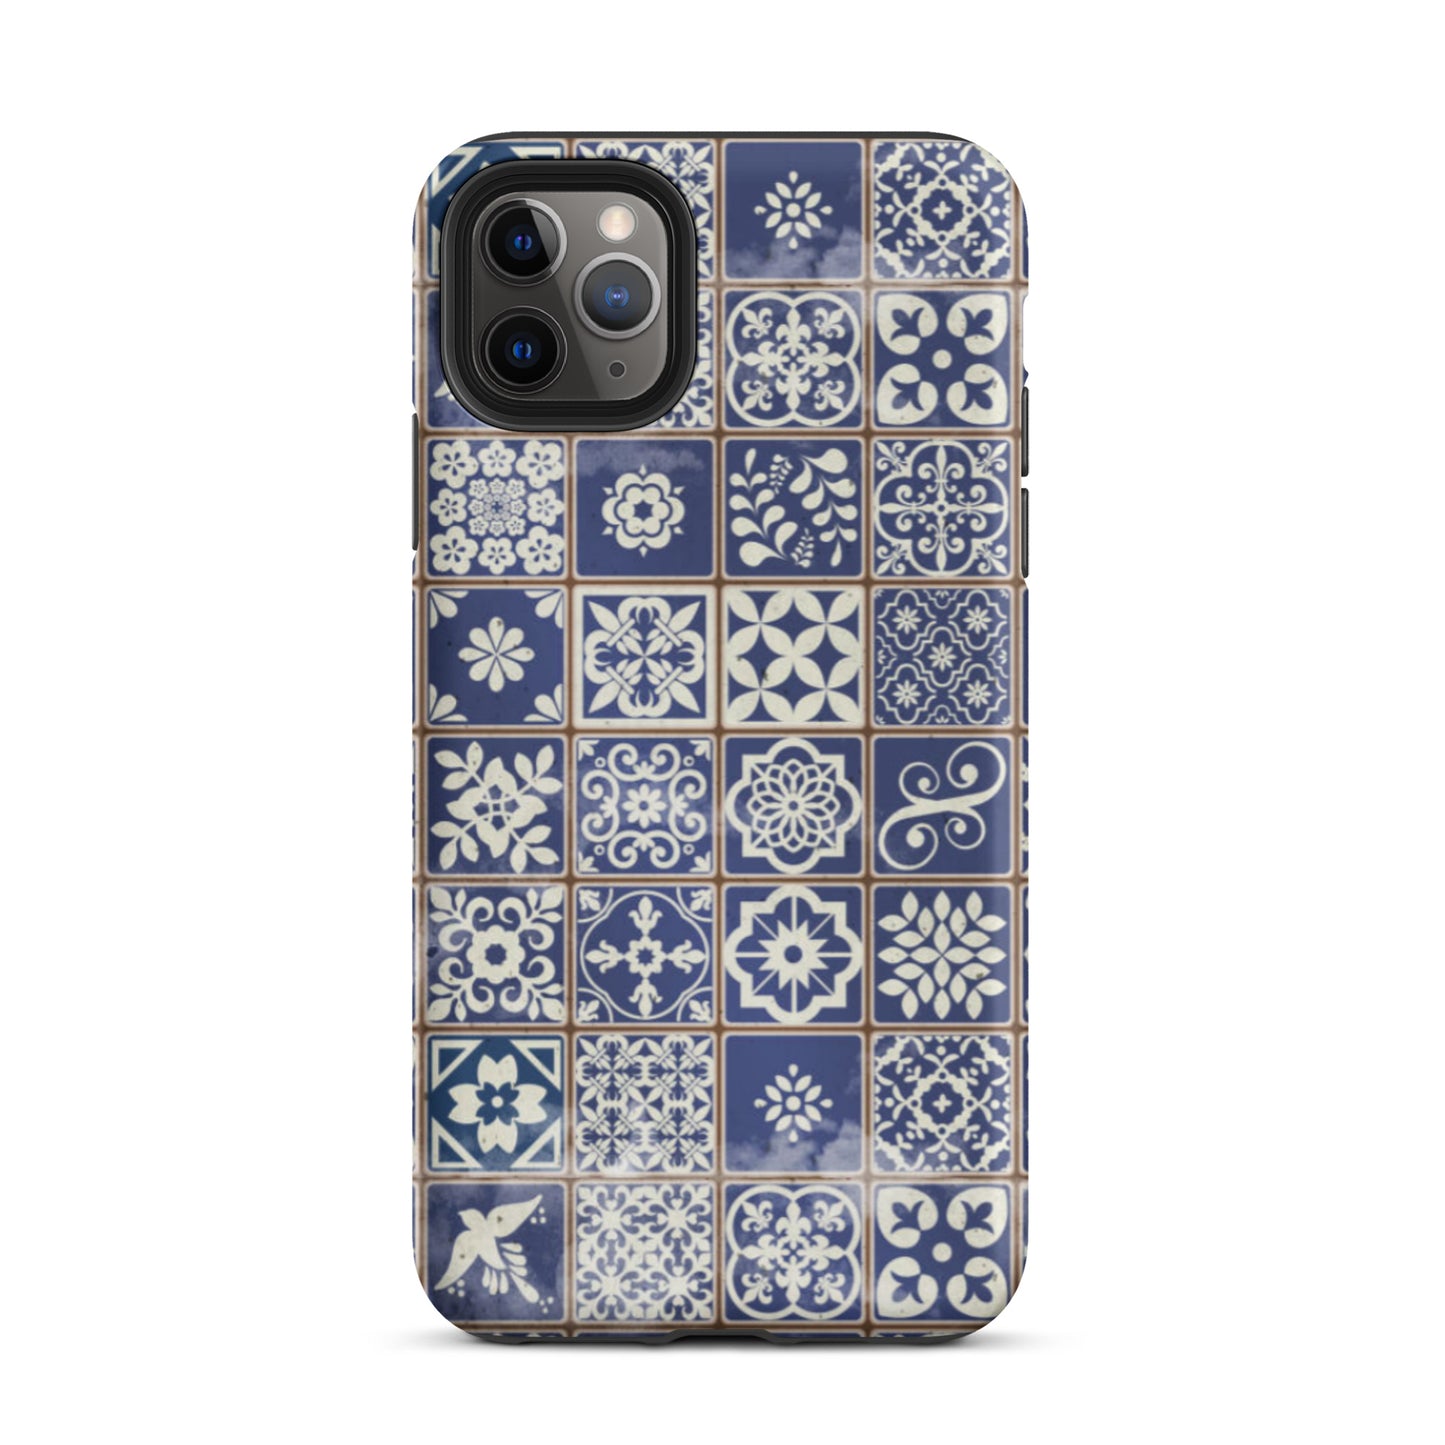 Portuguese Tile Tough iPhone 11 Pro Max case